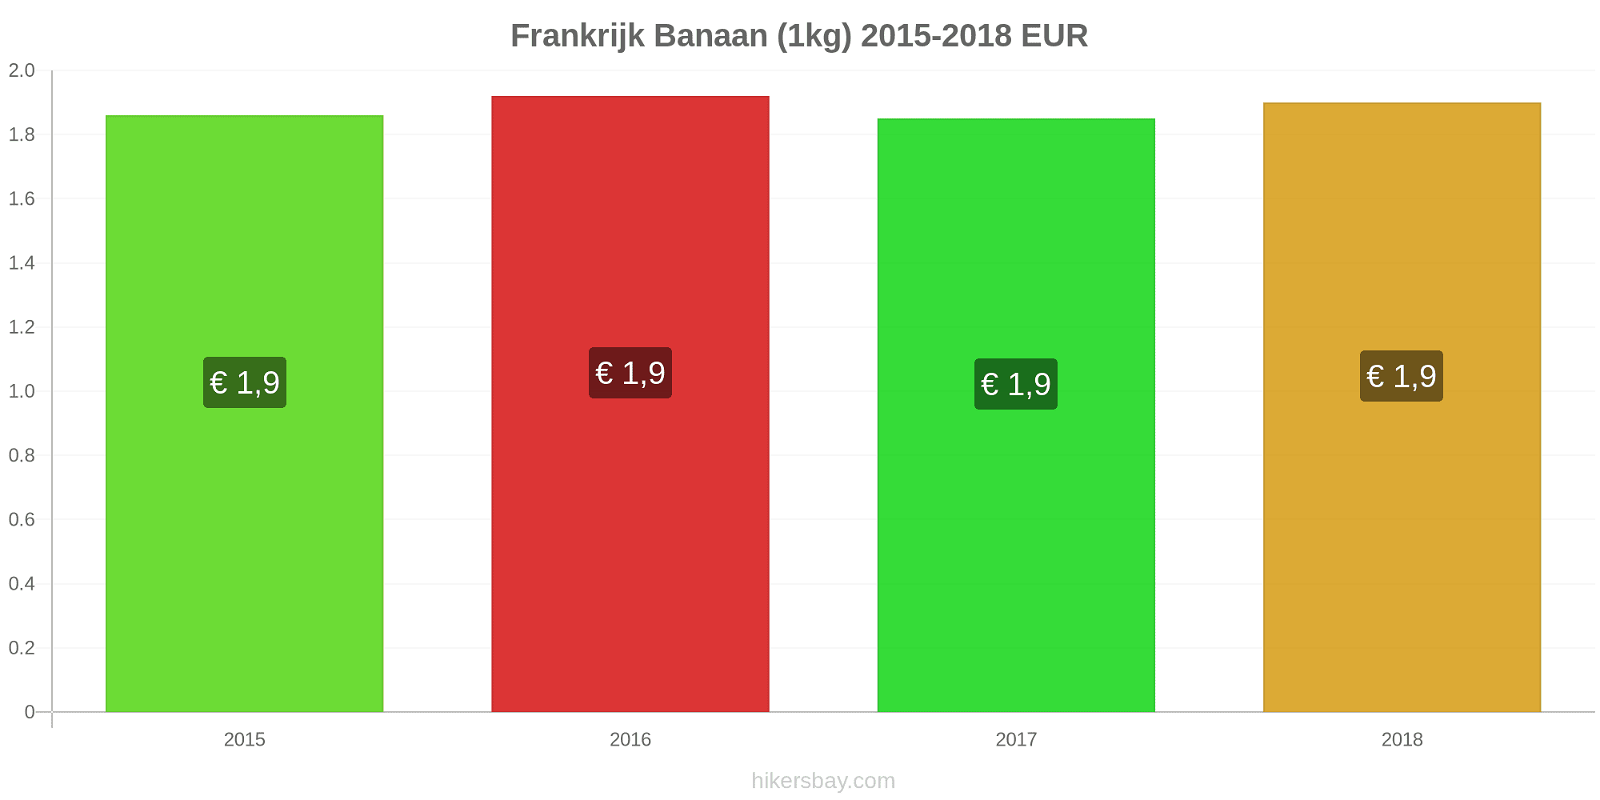 Frankrijk prijswijzigingen Bananen (1kg) hikersbay.com